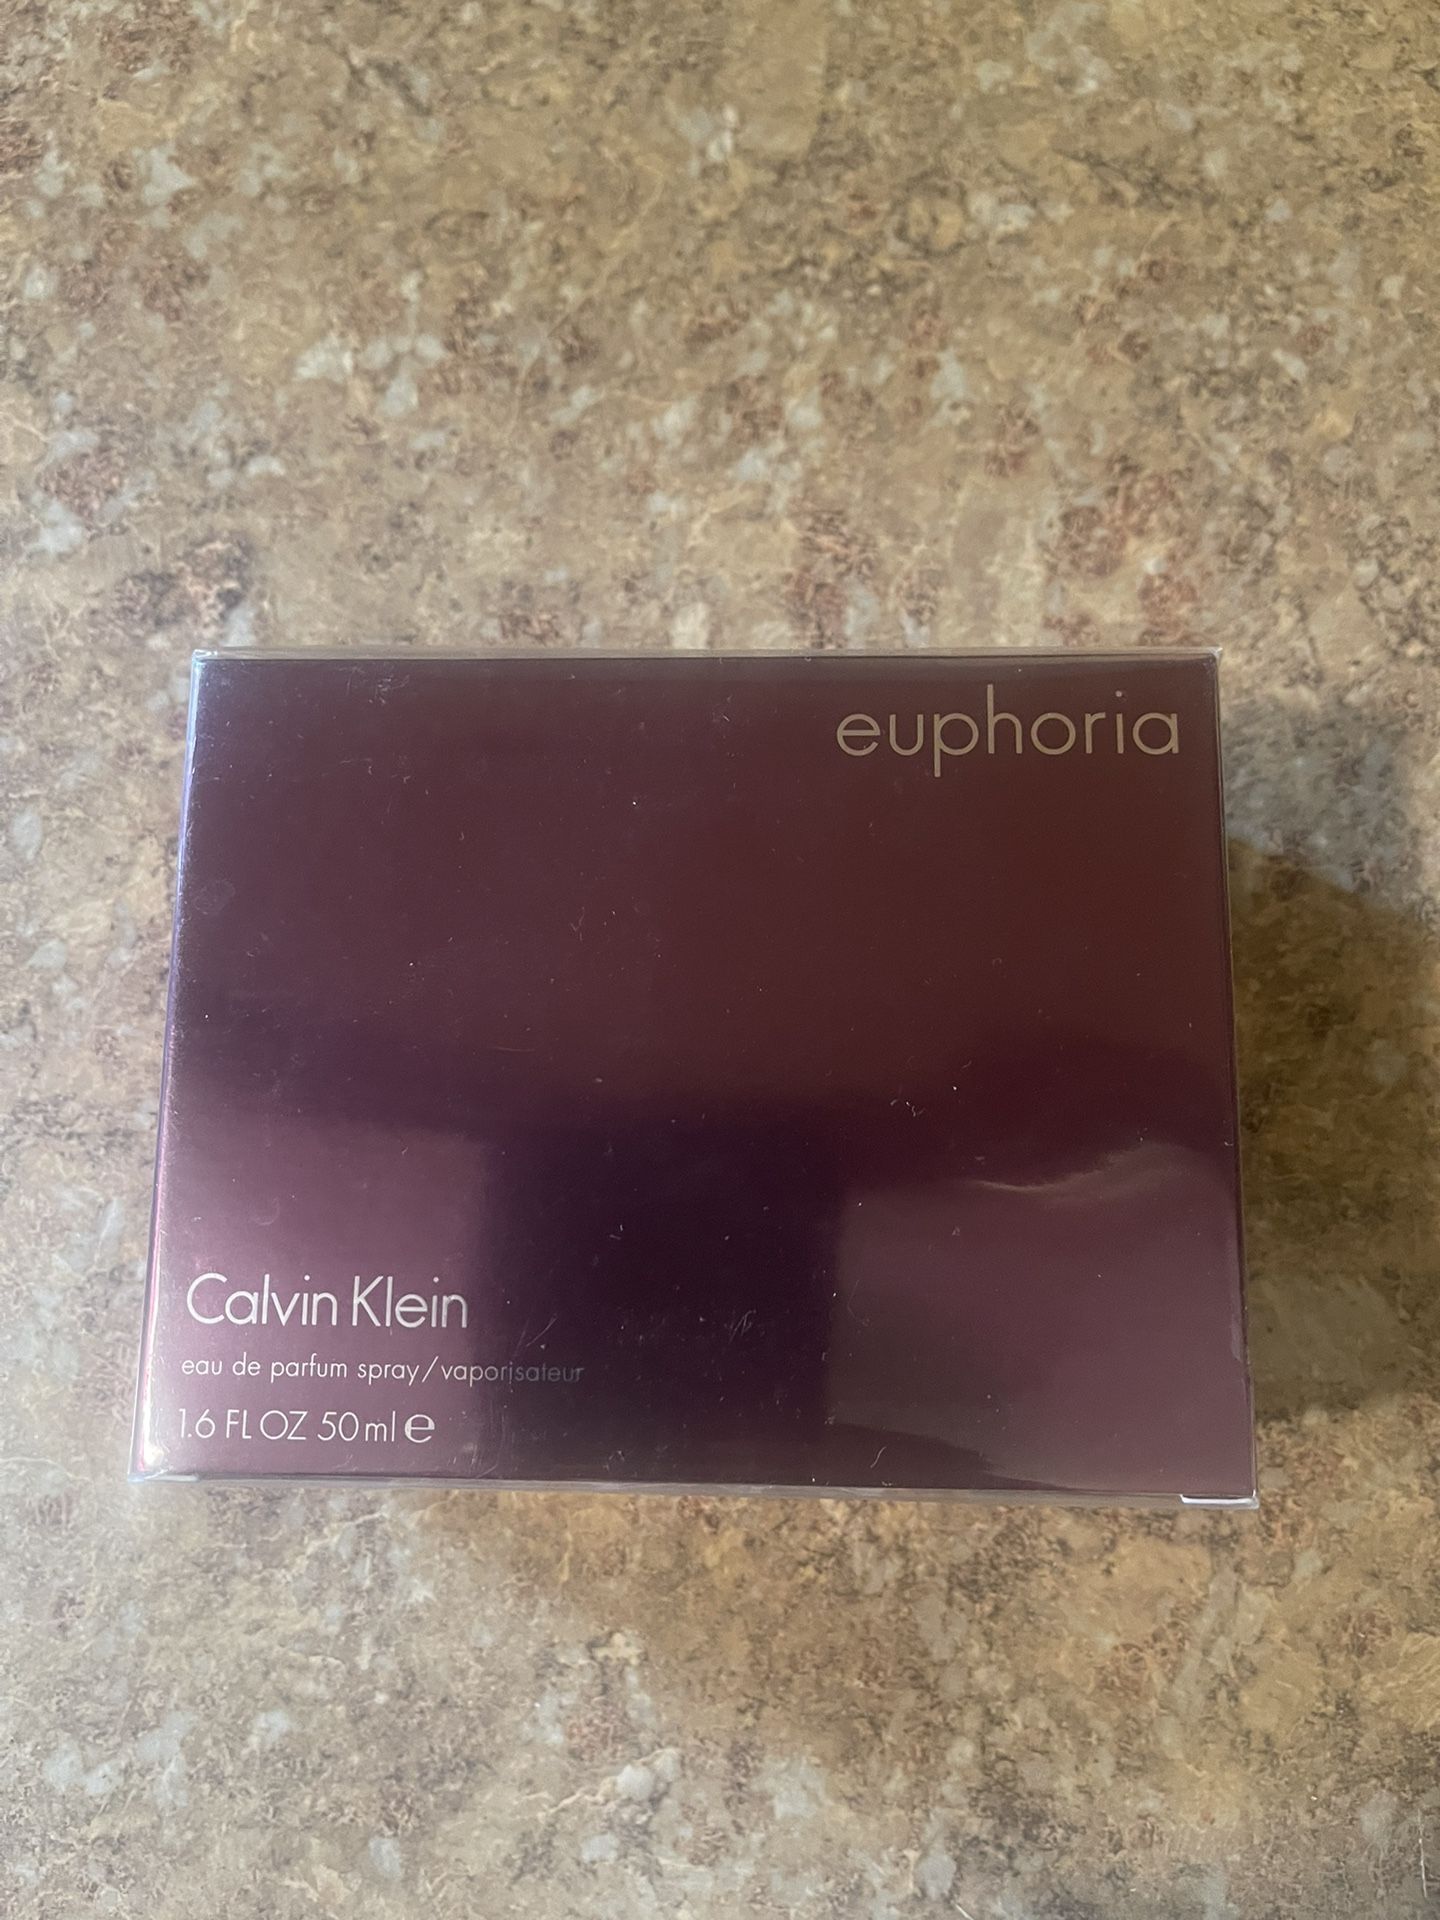 Euphoria Calvin Klein 1.6 Oz 